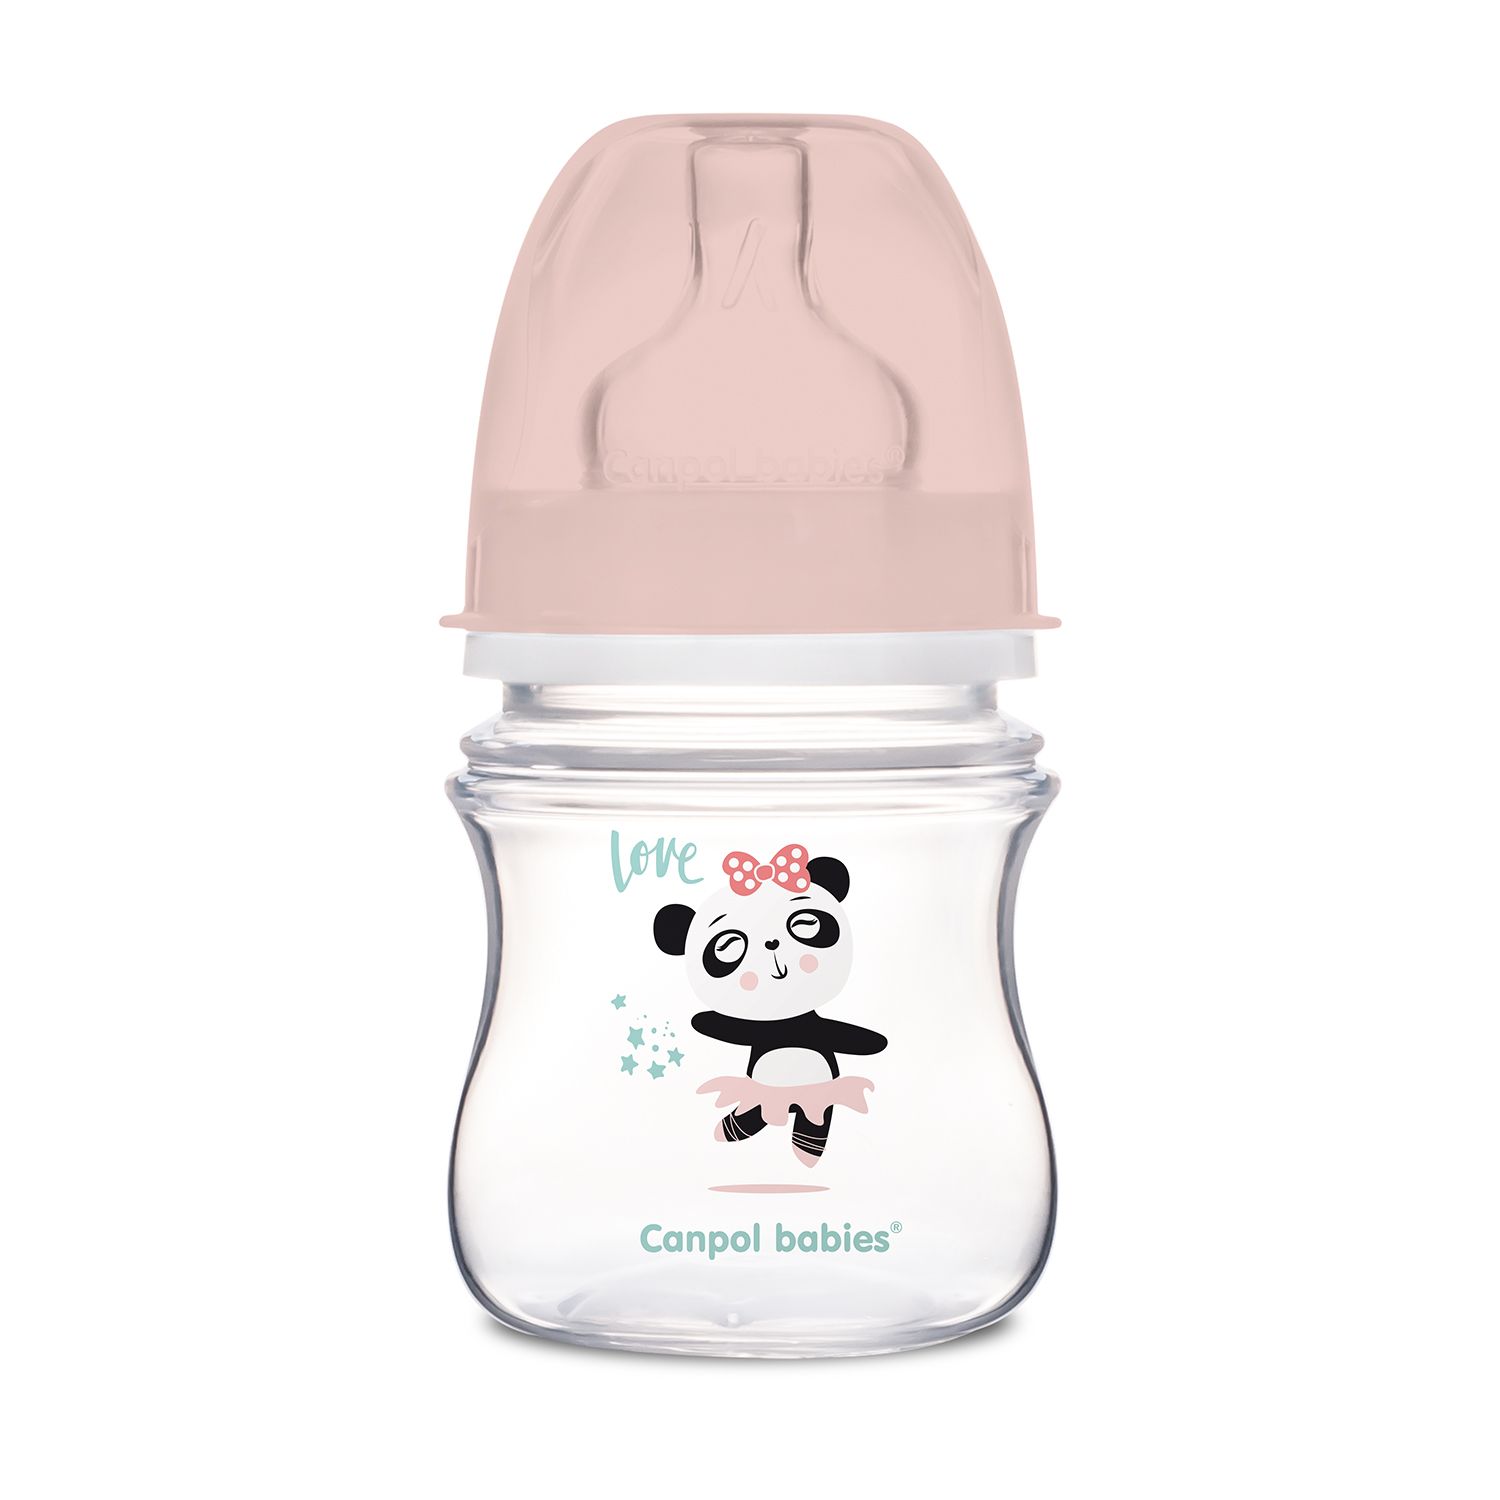 Антиколиковая бутылочка для кормления Canpol babies Easystart Toys, 120 мл, розовый (35/220_pin) - фото 1